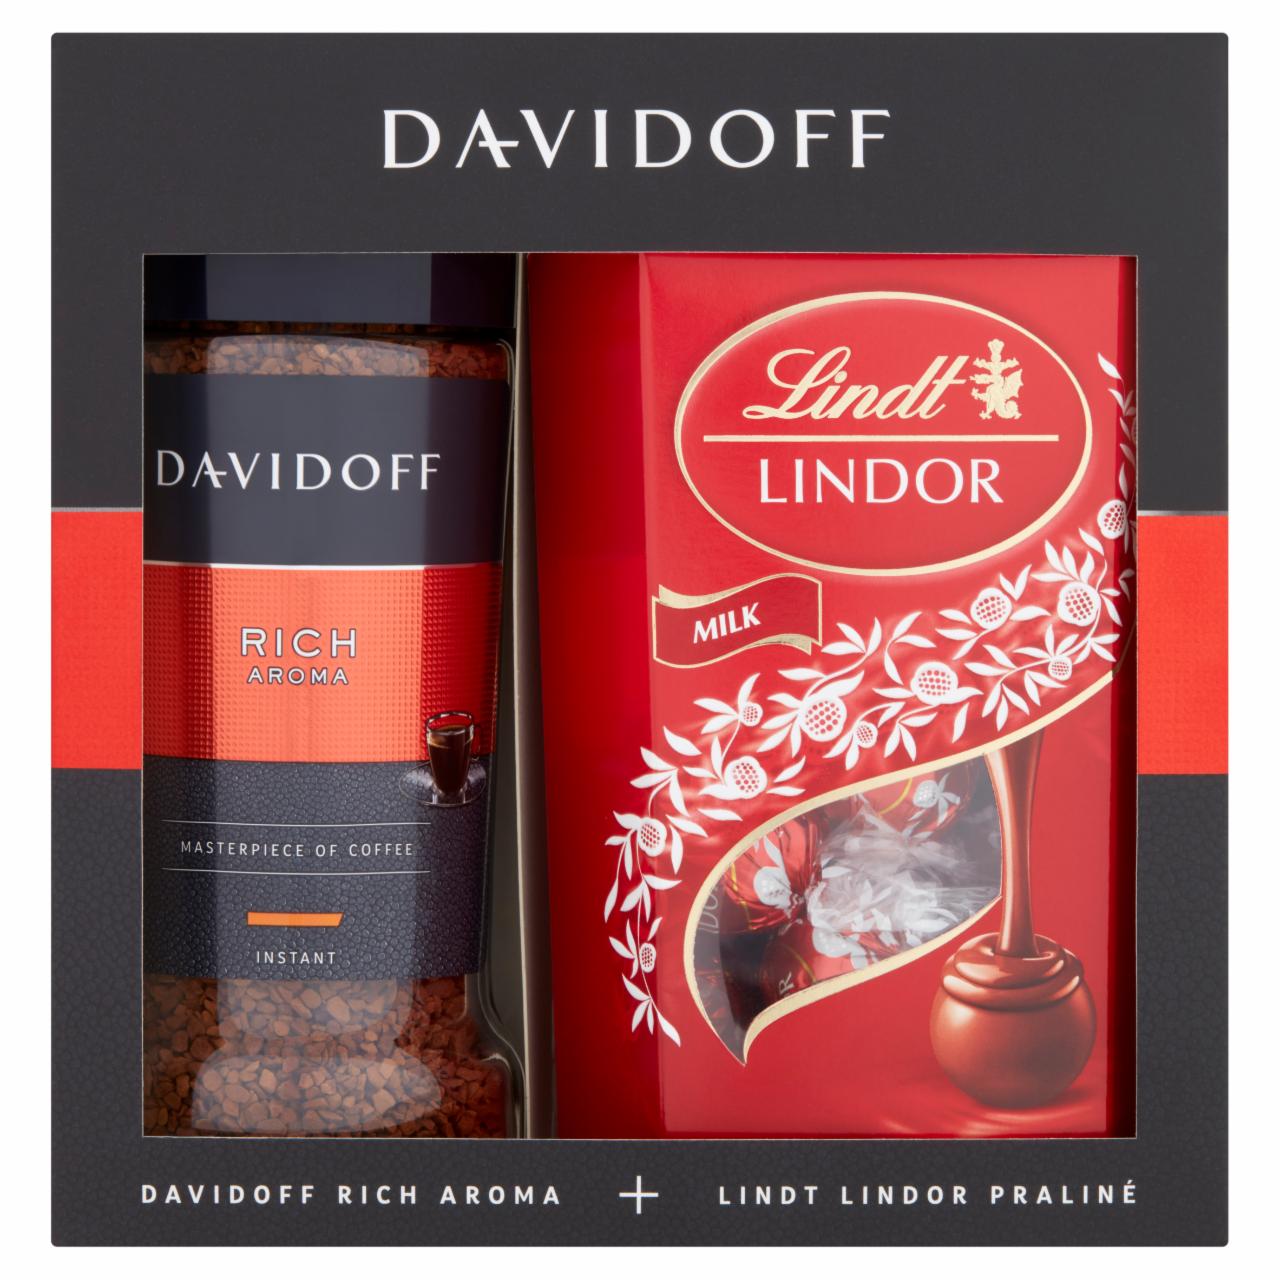 Képek - Davidoff Rich Aroma instant kávé + Lindt Lindor tejcsokoládé praliné ajándékcsomag 300 g